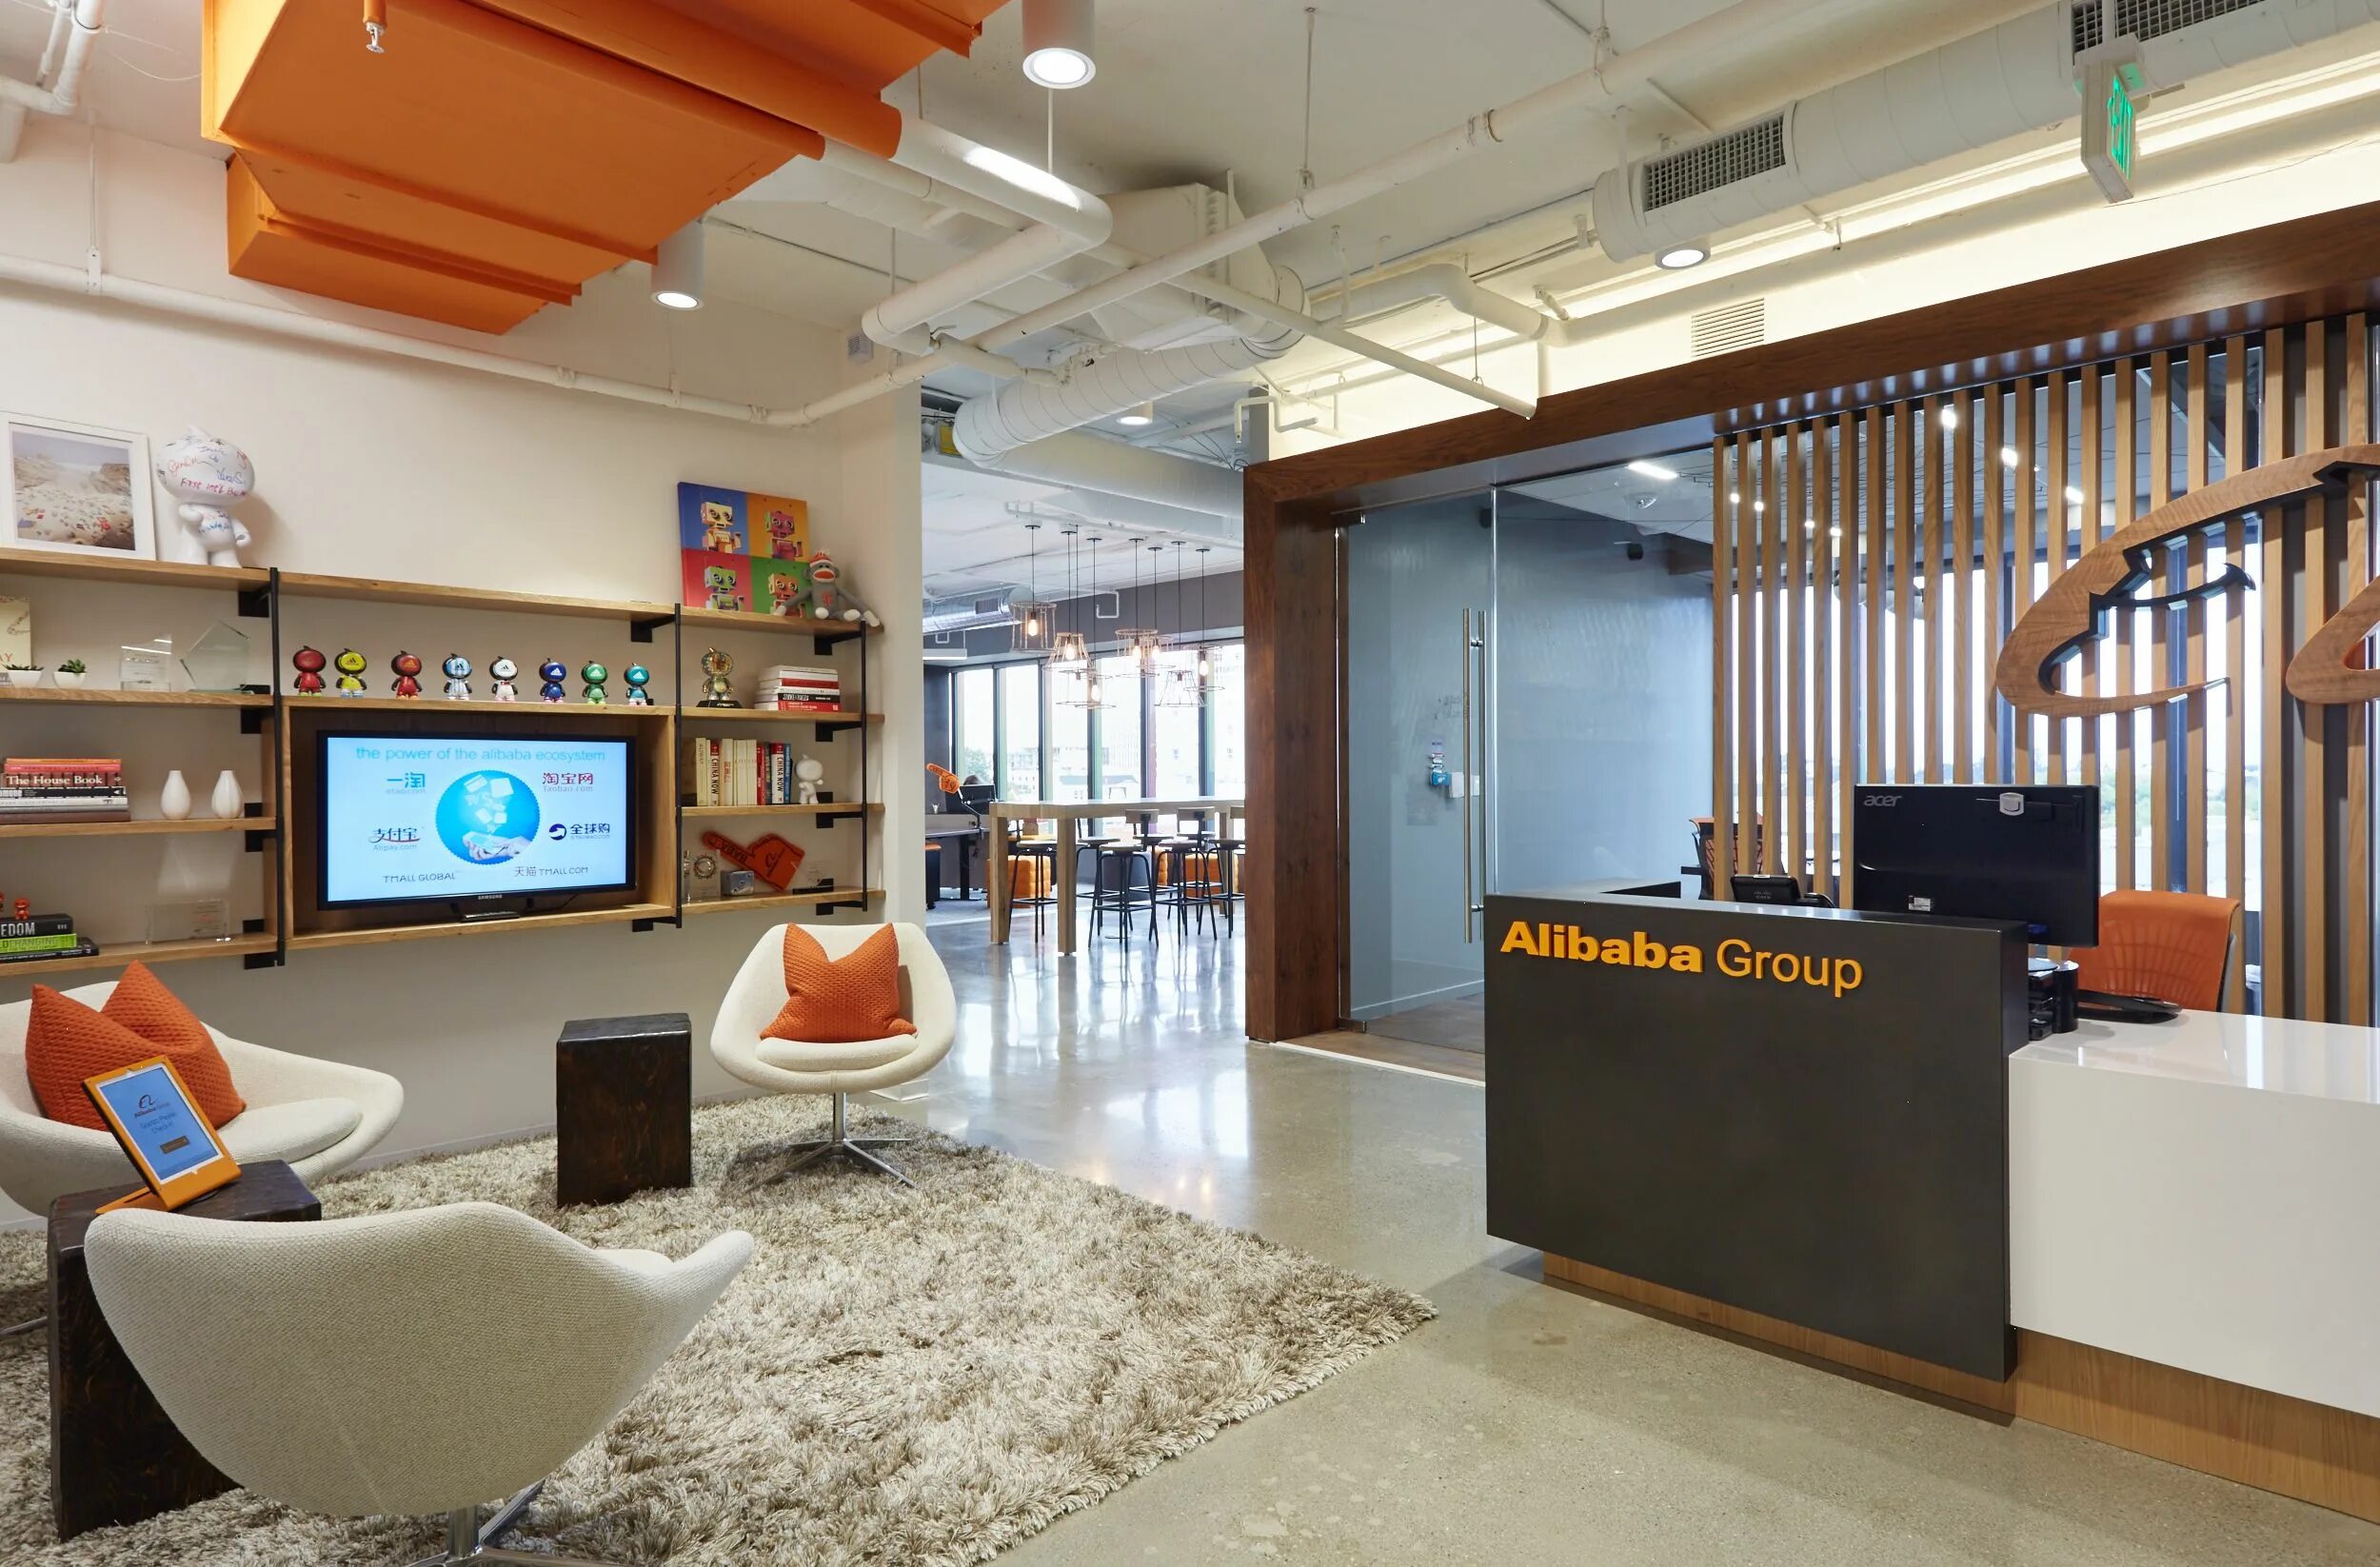 Кабинет групп сайт. Офис Москва Сити. Alibaba Group офис.